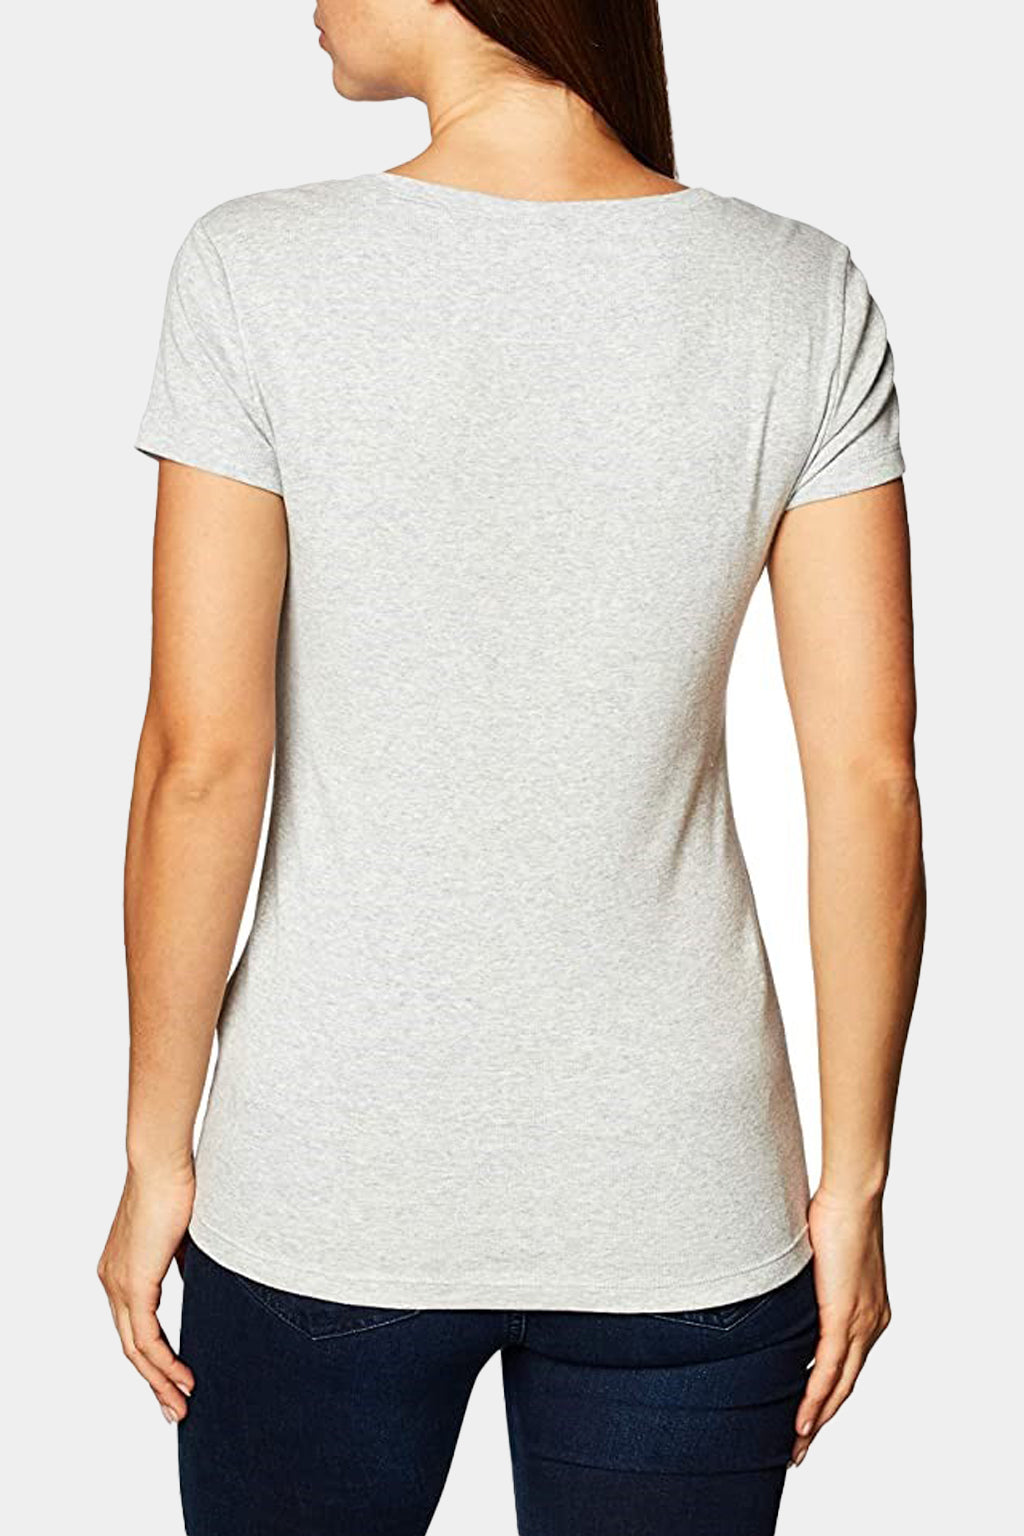 Tommy Hilfiger - Women's T-Shirt